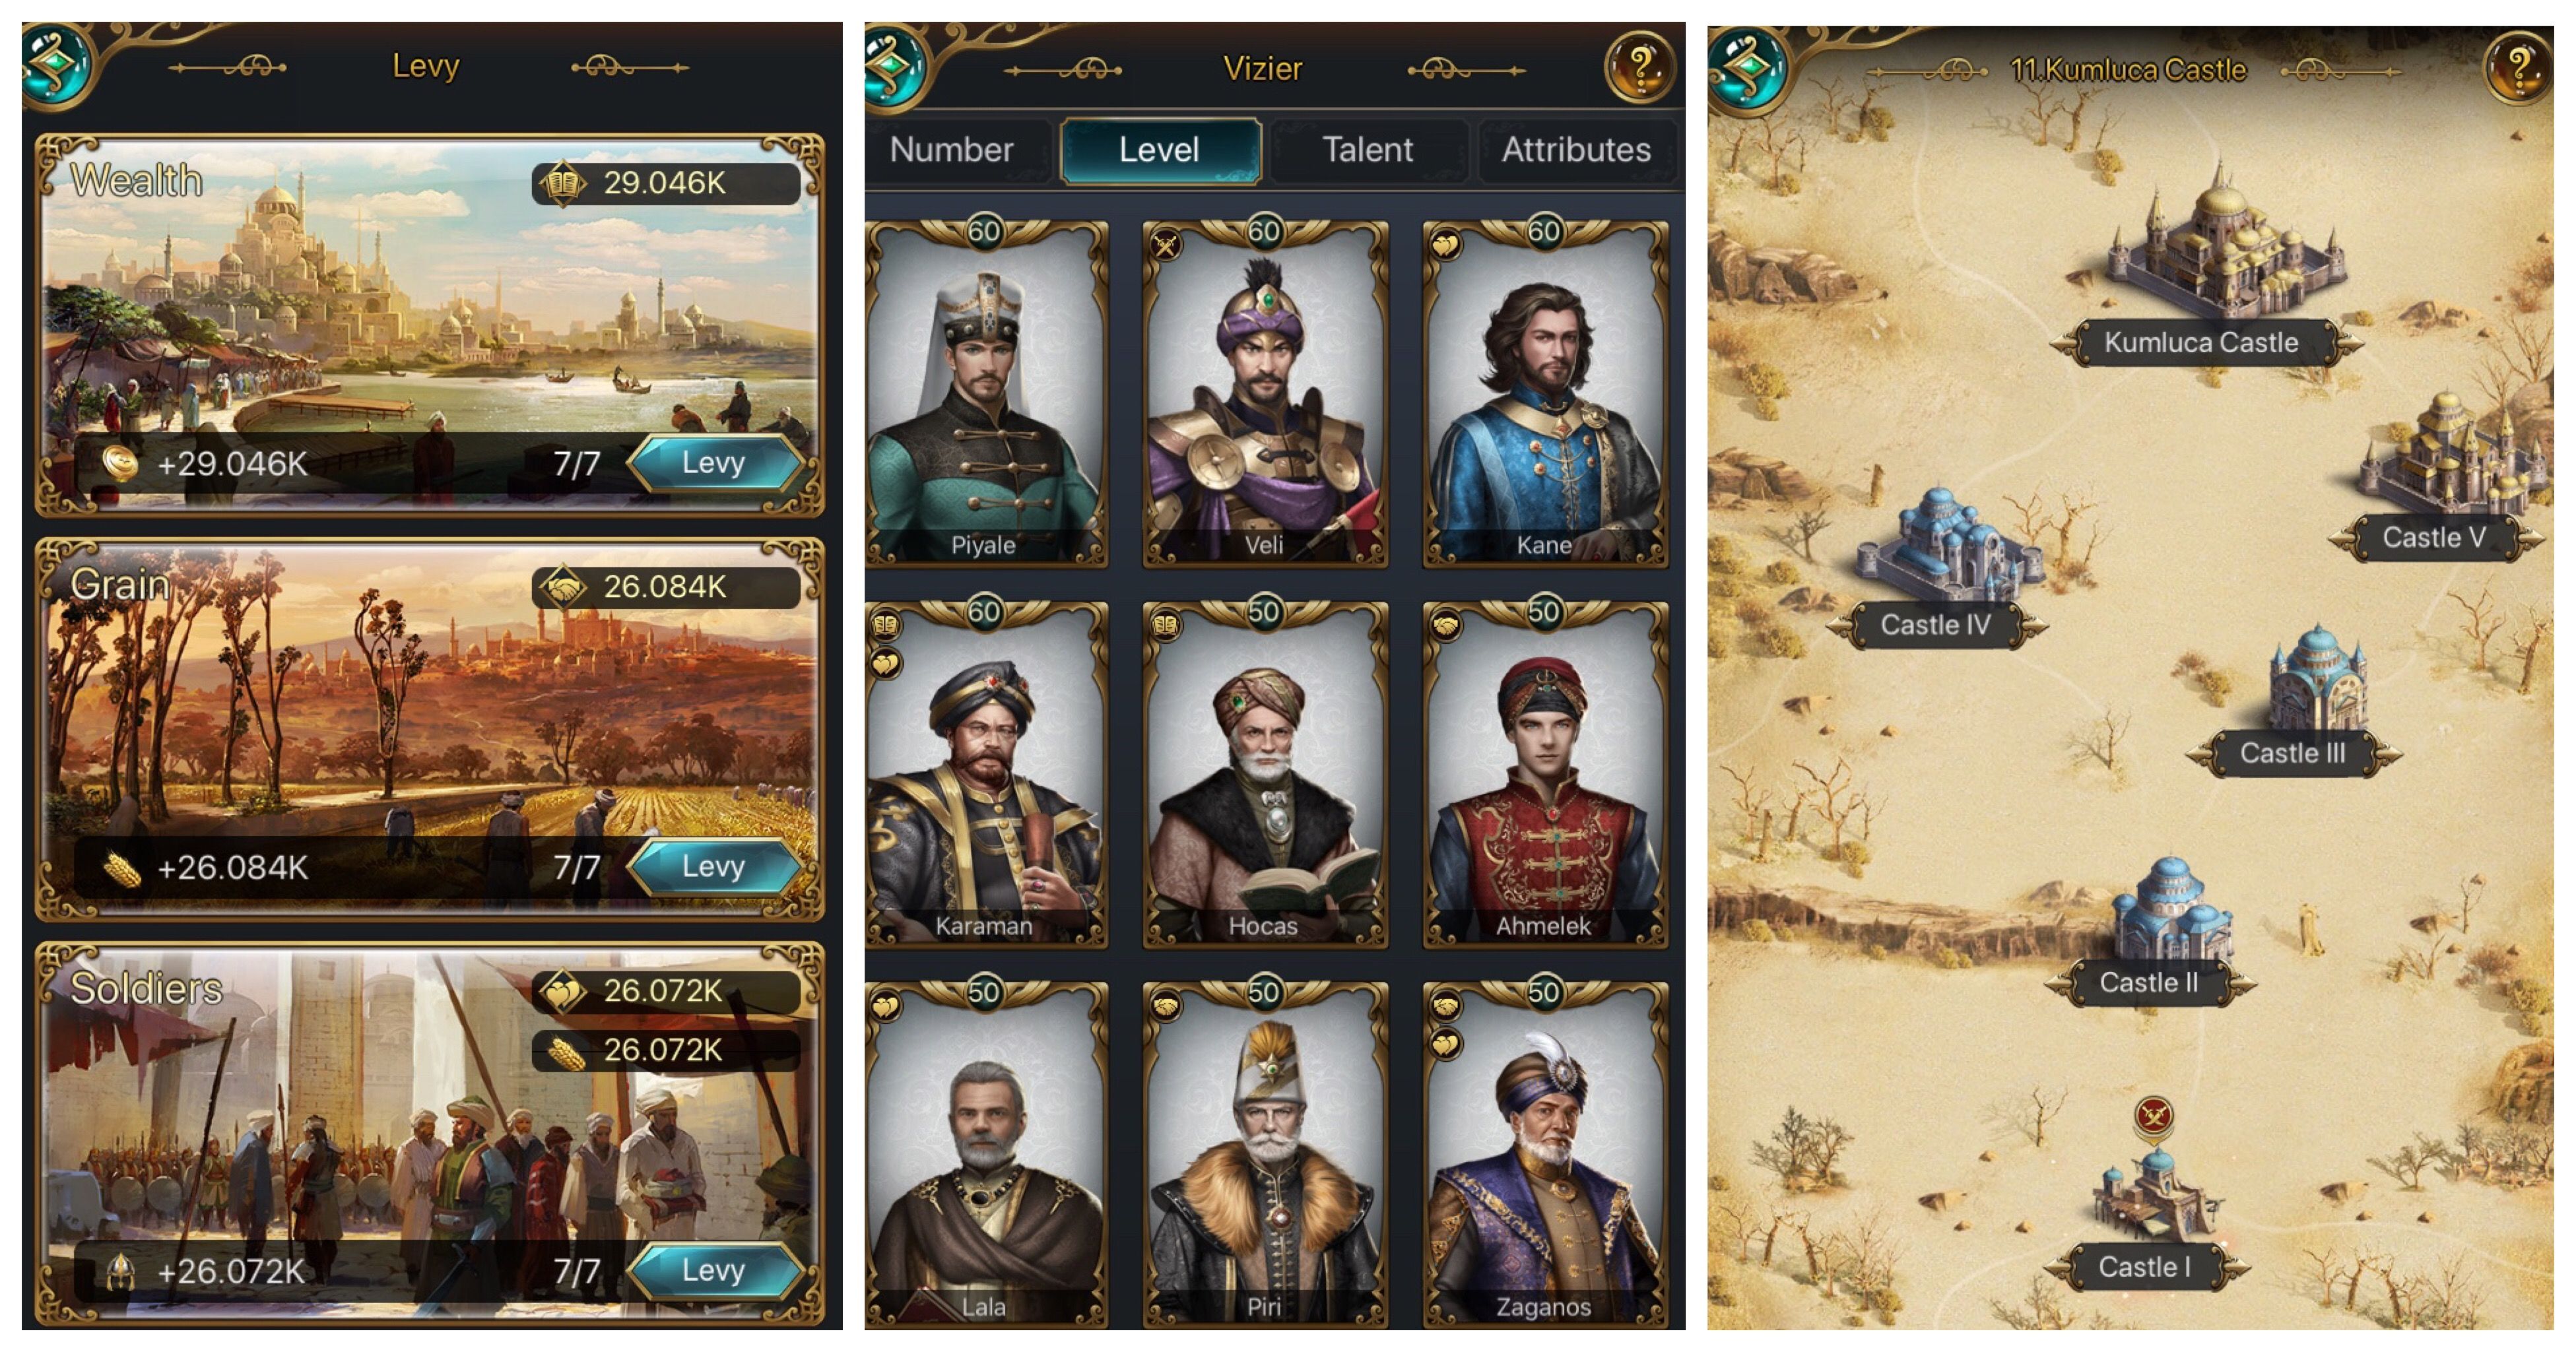 Coba Mainin Game of Sultans di Smartphone Kamu Deh Semua Halaman Hai Grid ID